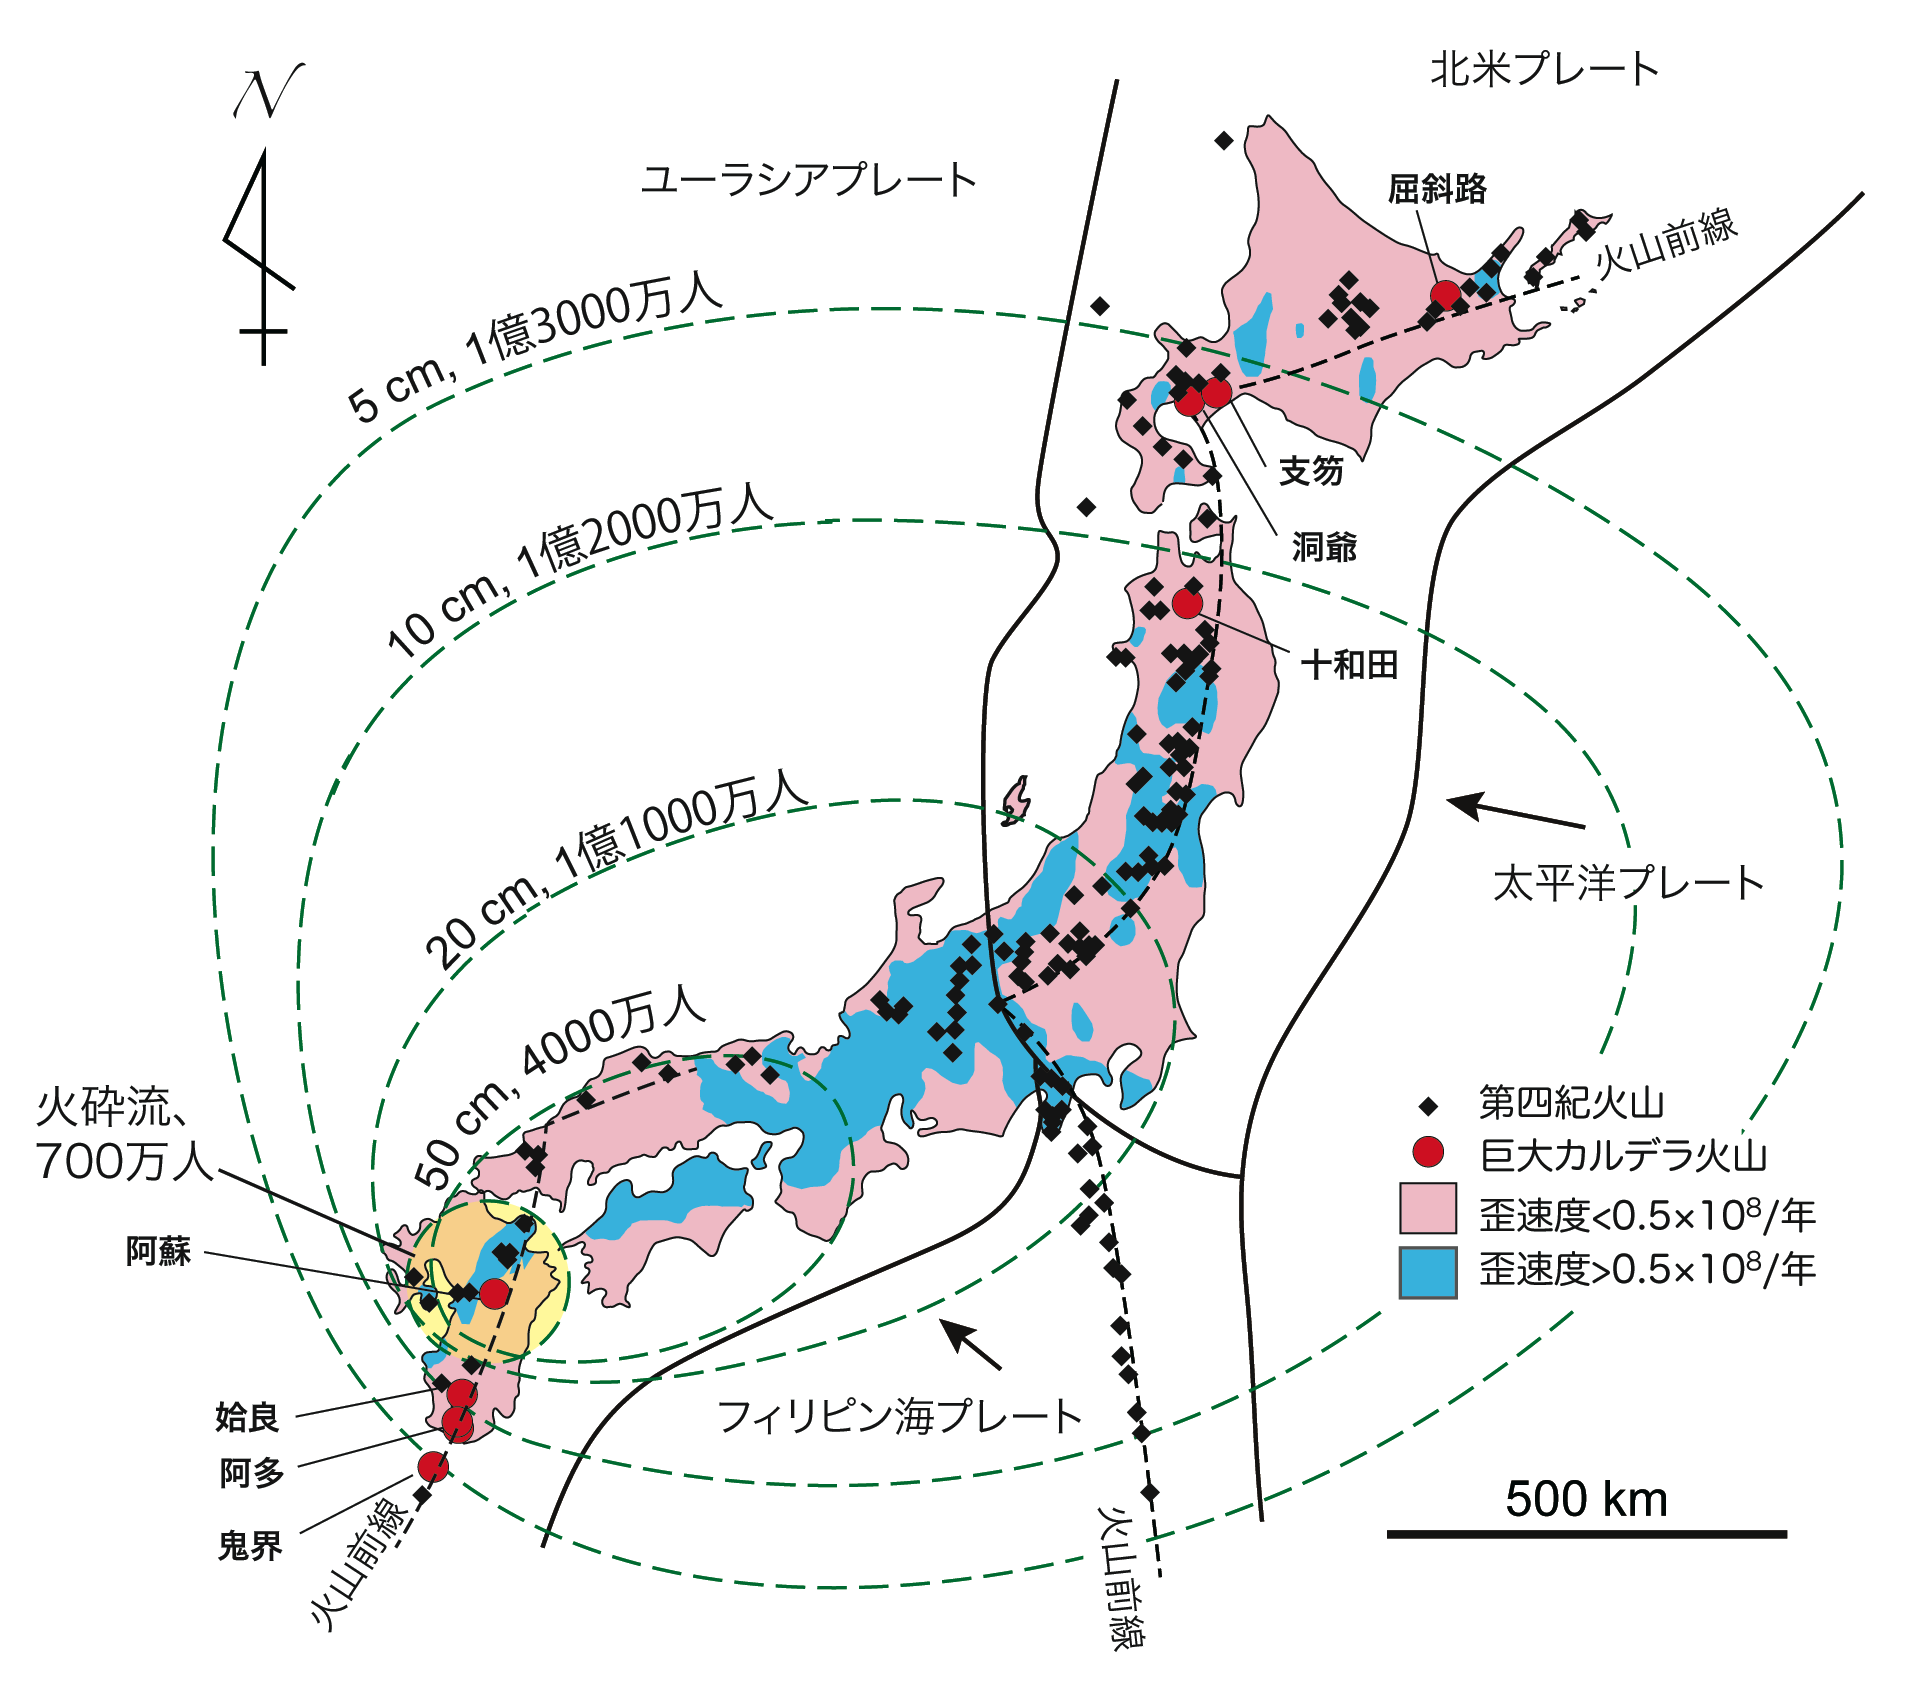 巨大カルデラ噴火のメカニズムとリスクを発表 国立大学法人 神戸大学 Kobe University